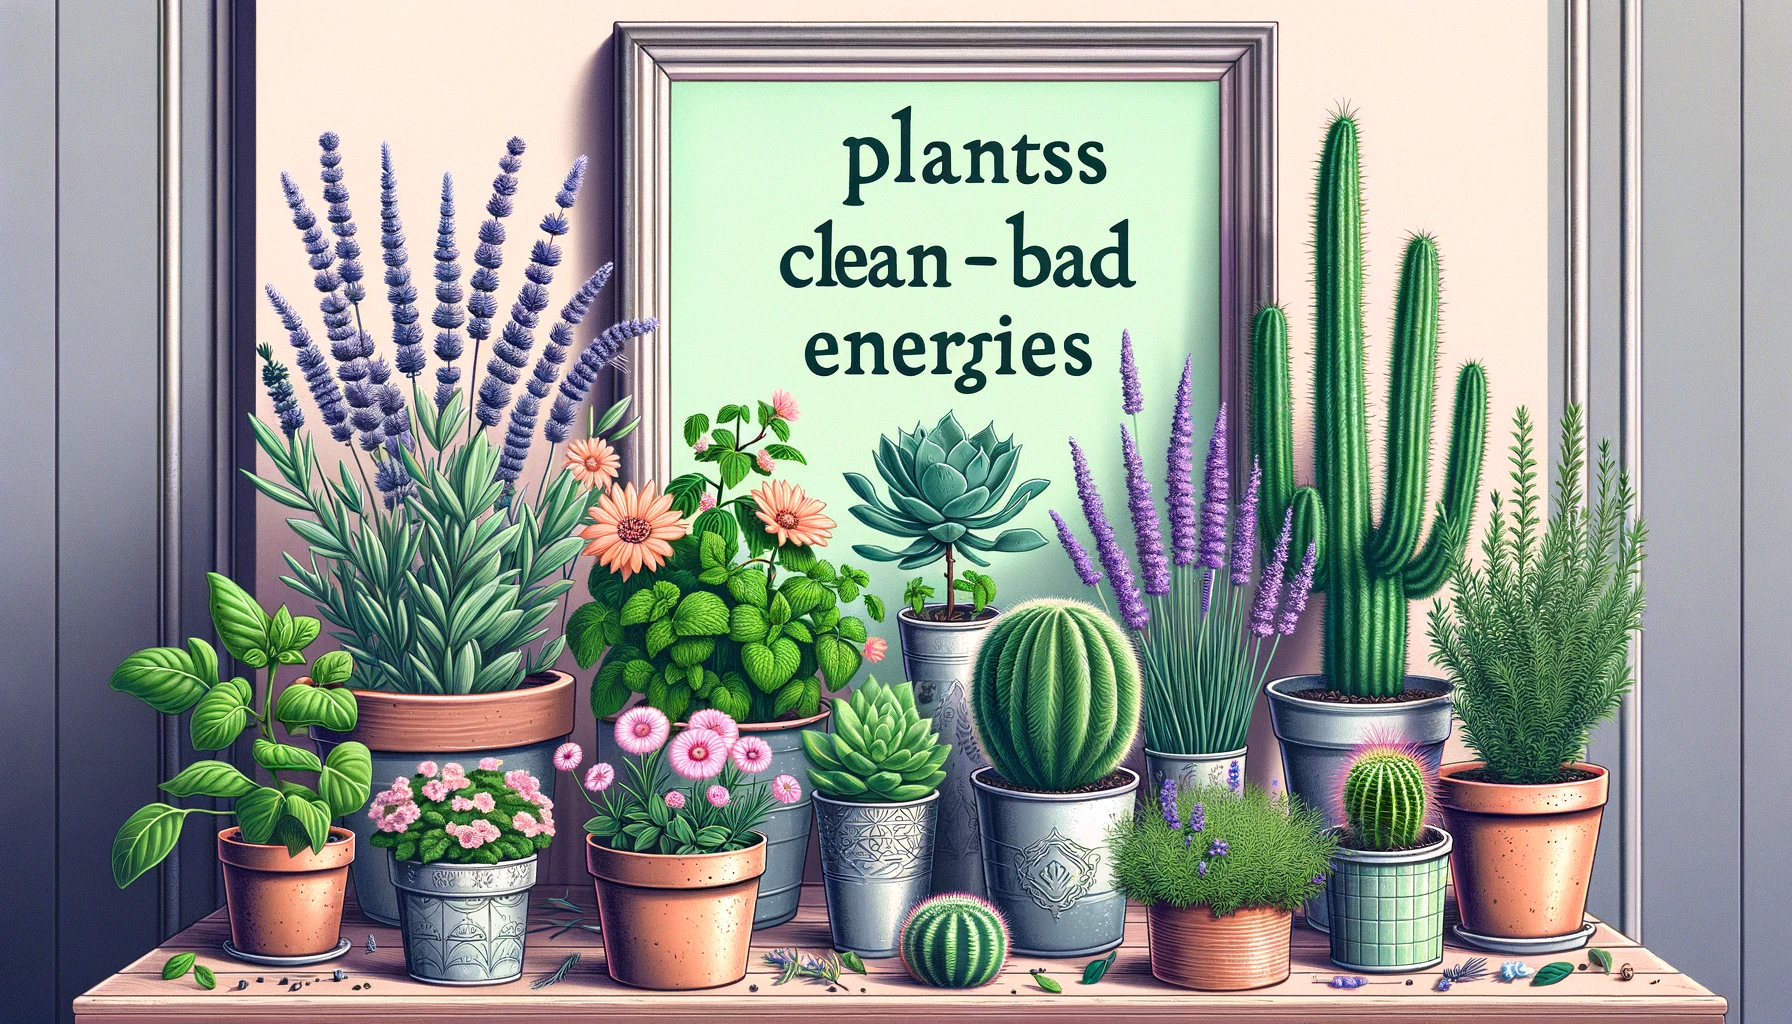 Las Plantas que Limpian las Malas Energías